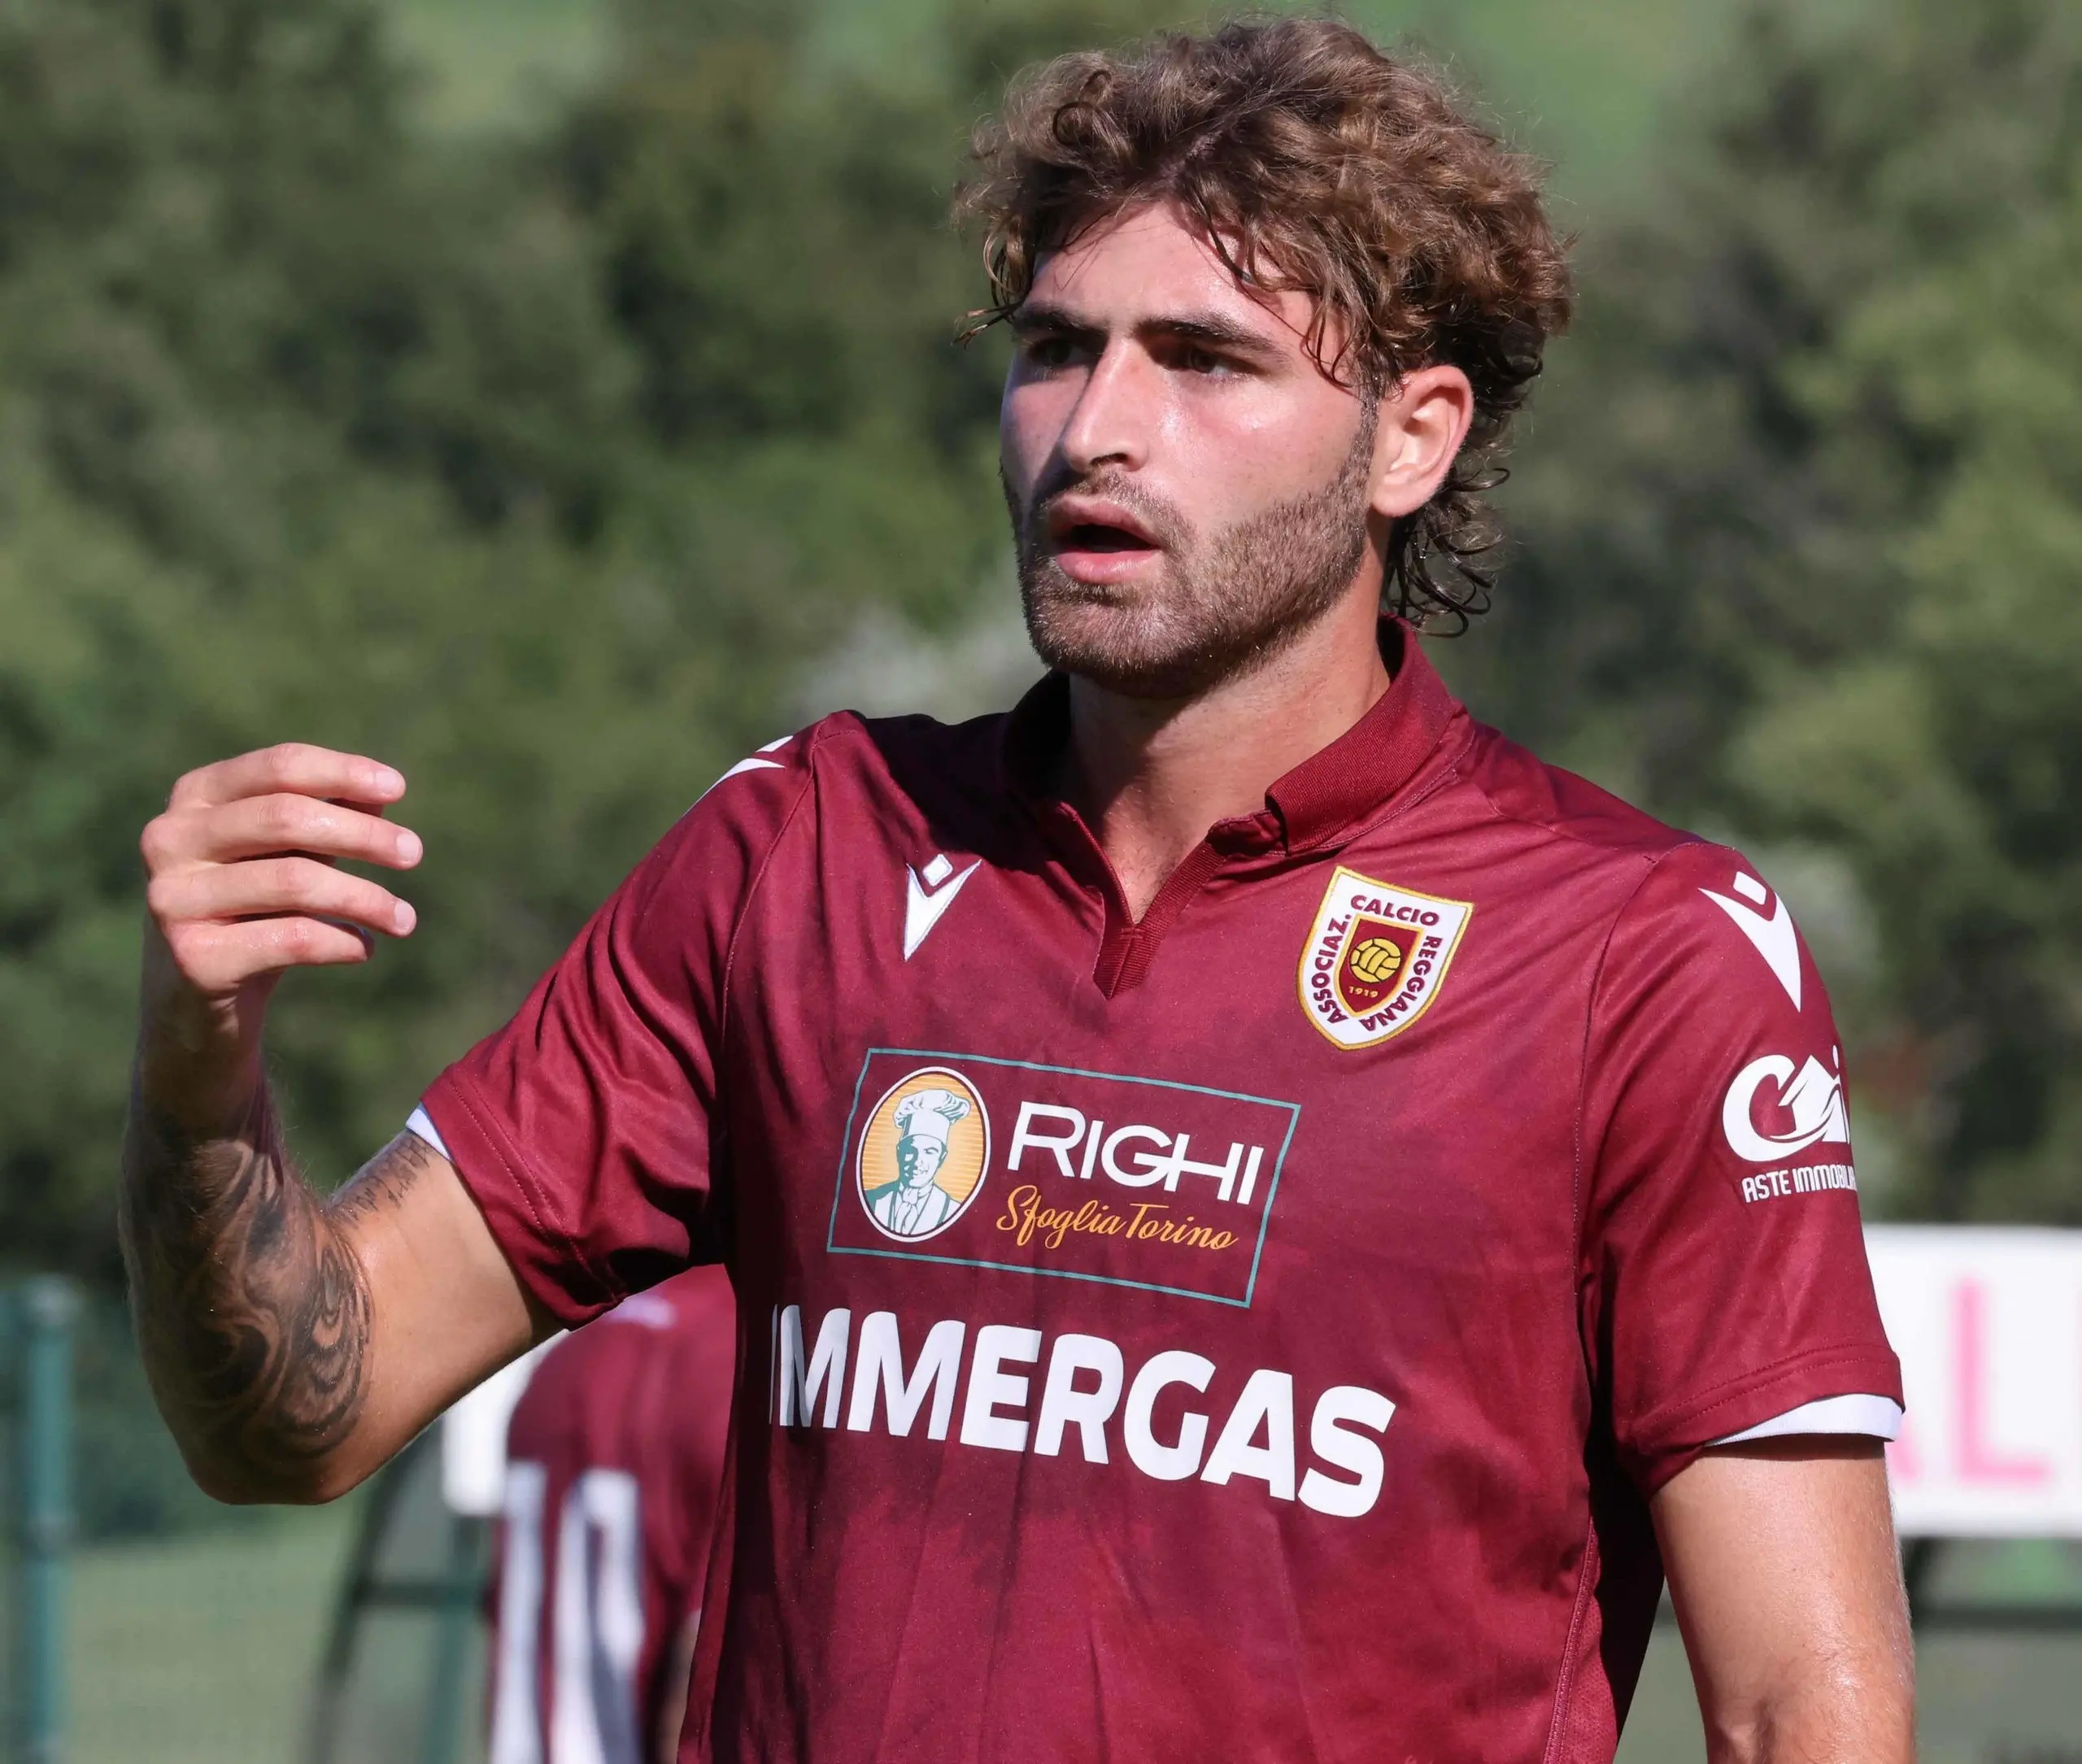 UFFICIALE: Manolo Portanova riparte dalla Reggiana: il comunicato del club  - TUTTOmercatoWEB.com